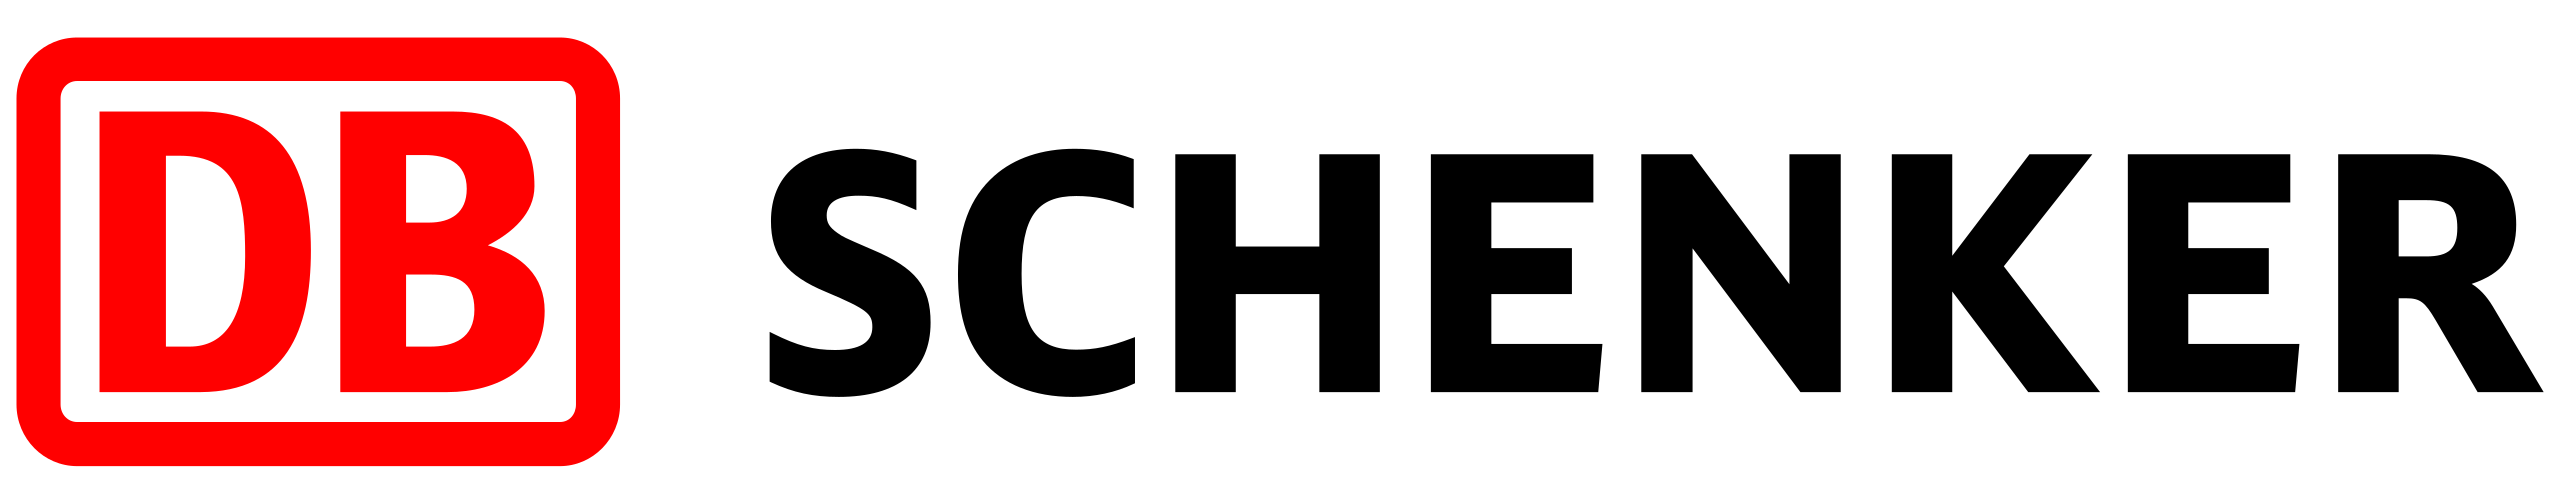 Schenker - logo